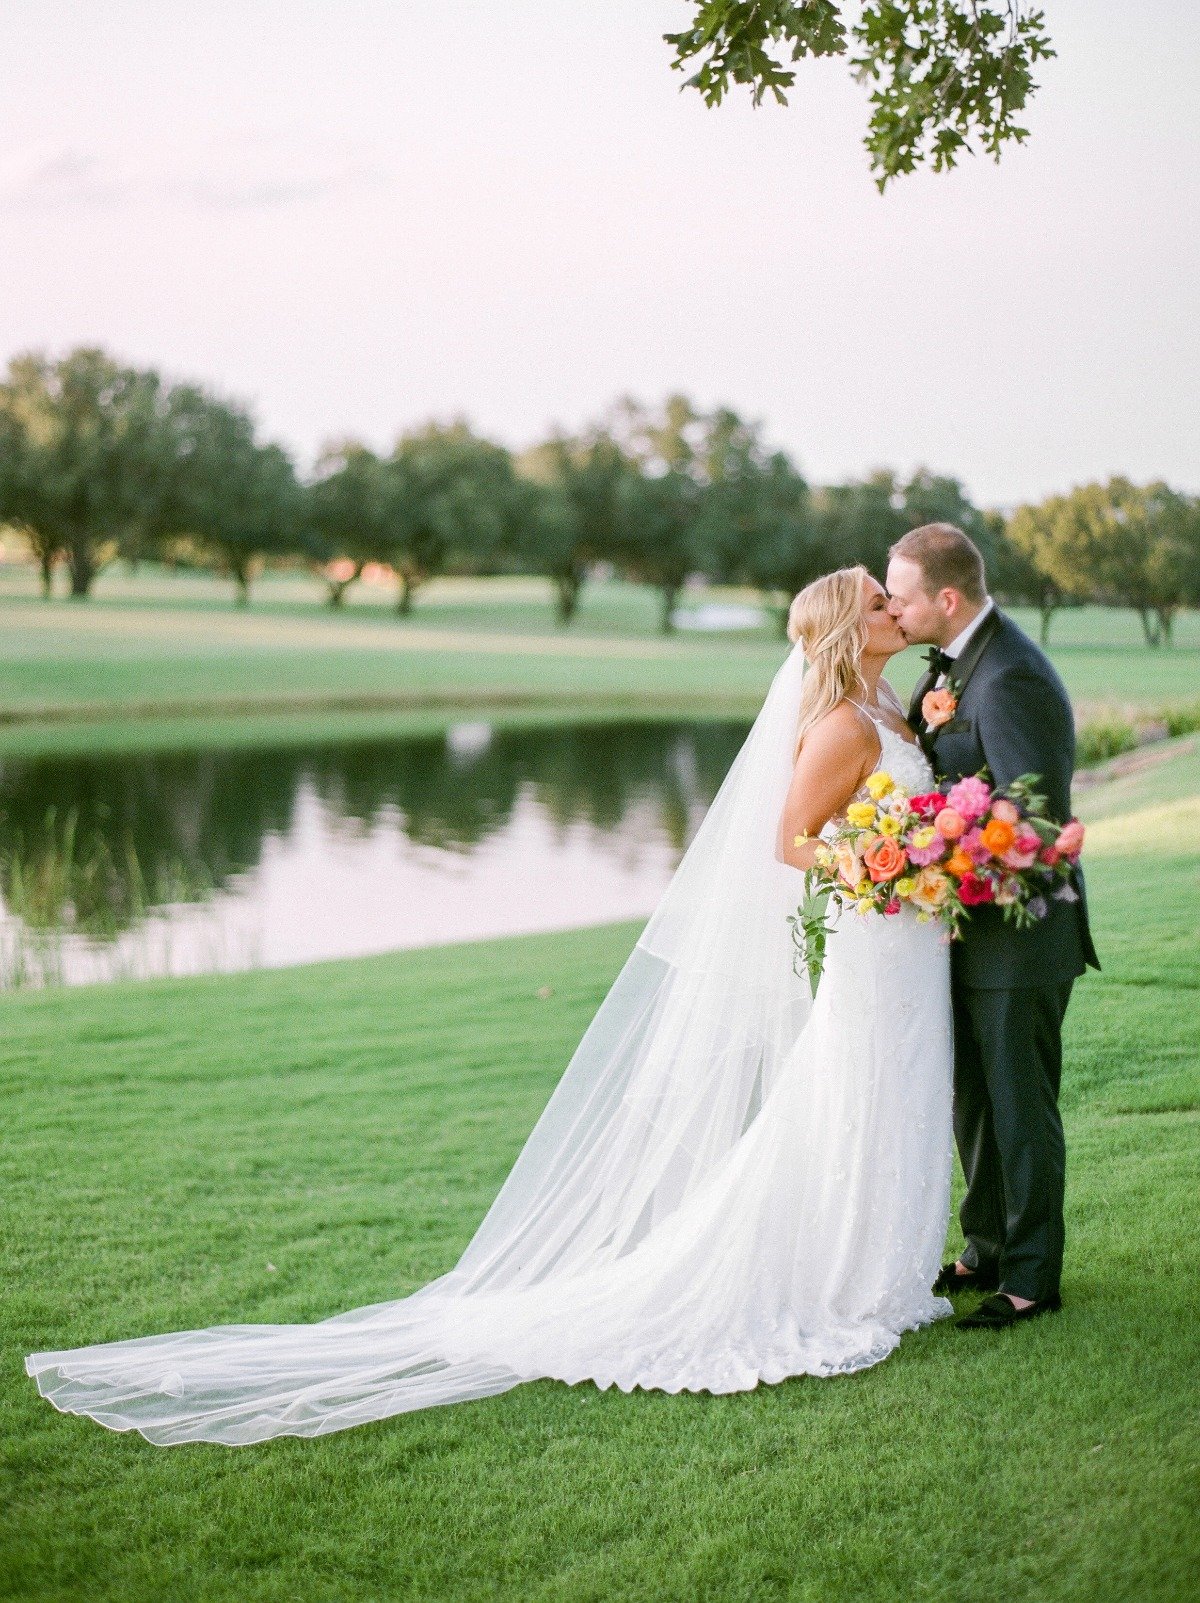 A Lush Garden Wedding At The Four Seasons in Dallas Texas